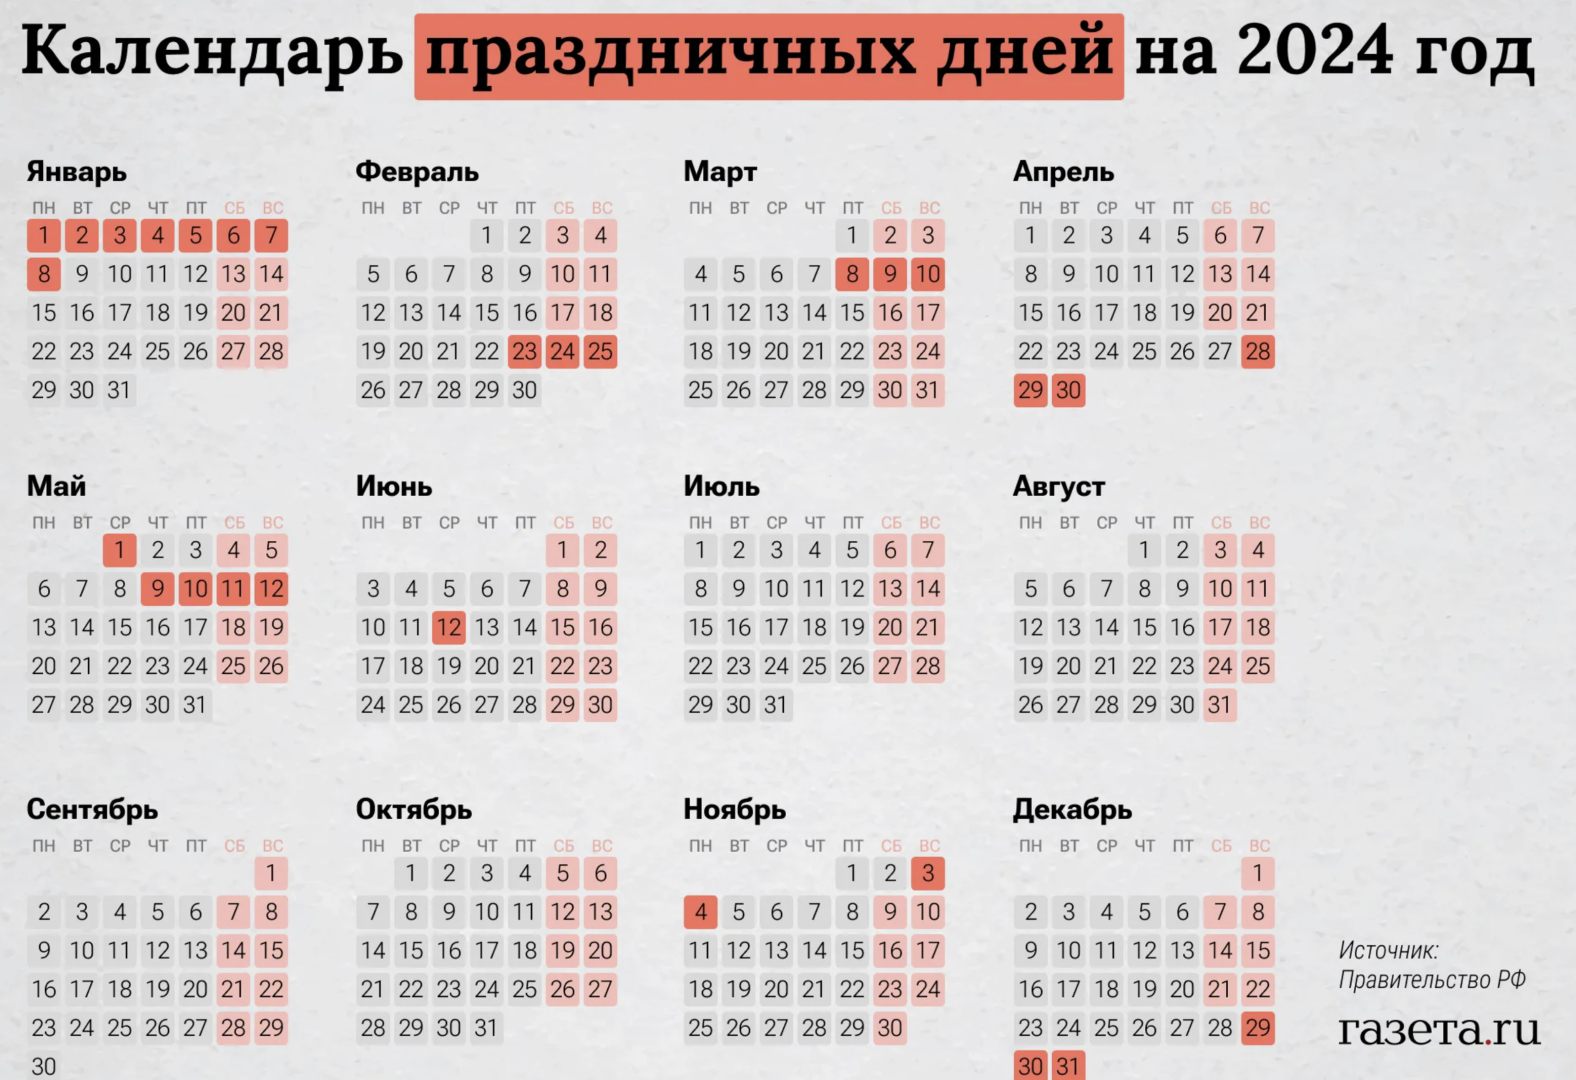 Календарь выходных. Выходные и праздничные дни в 2024 в России. Кадендарьпраздников. Нерабочие праздничные дни в 2024 году в России.